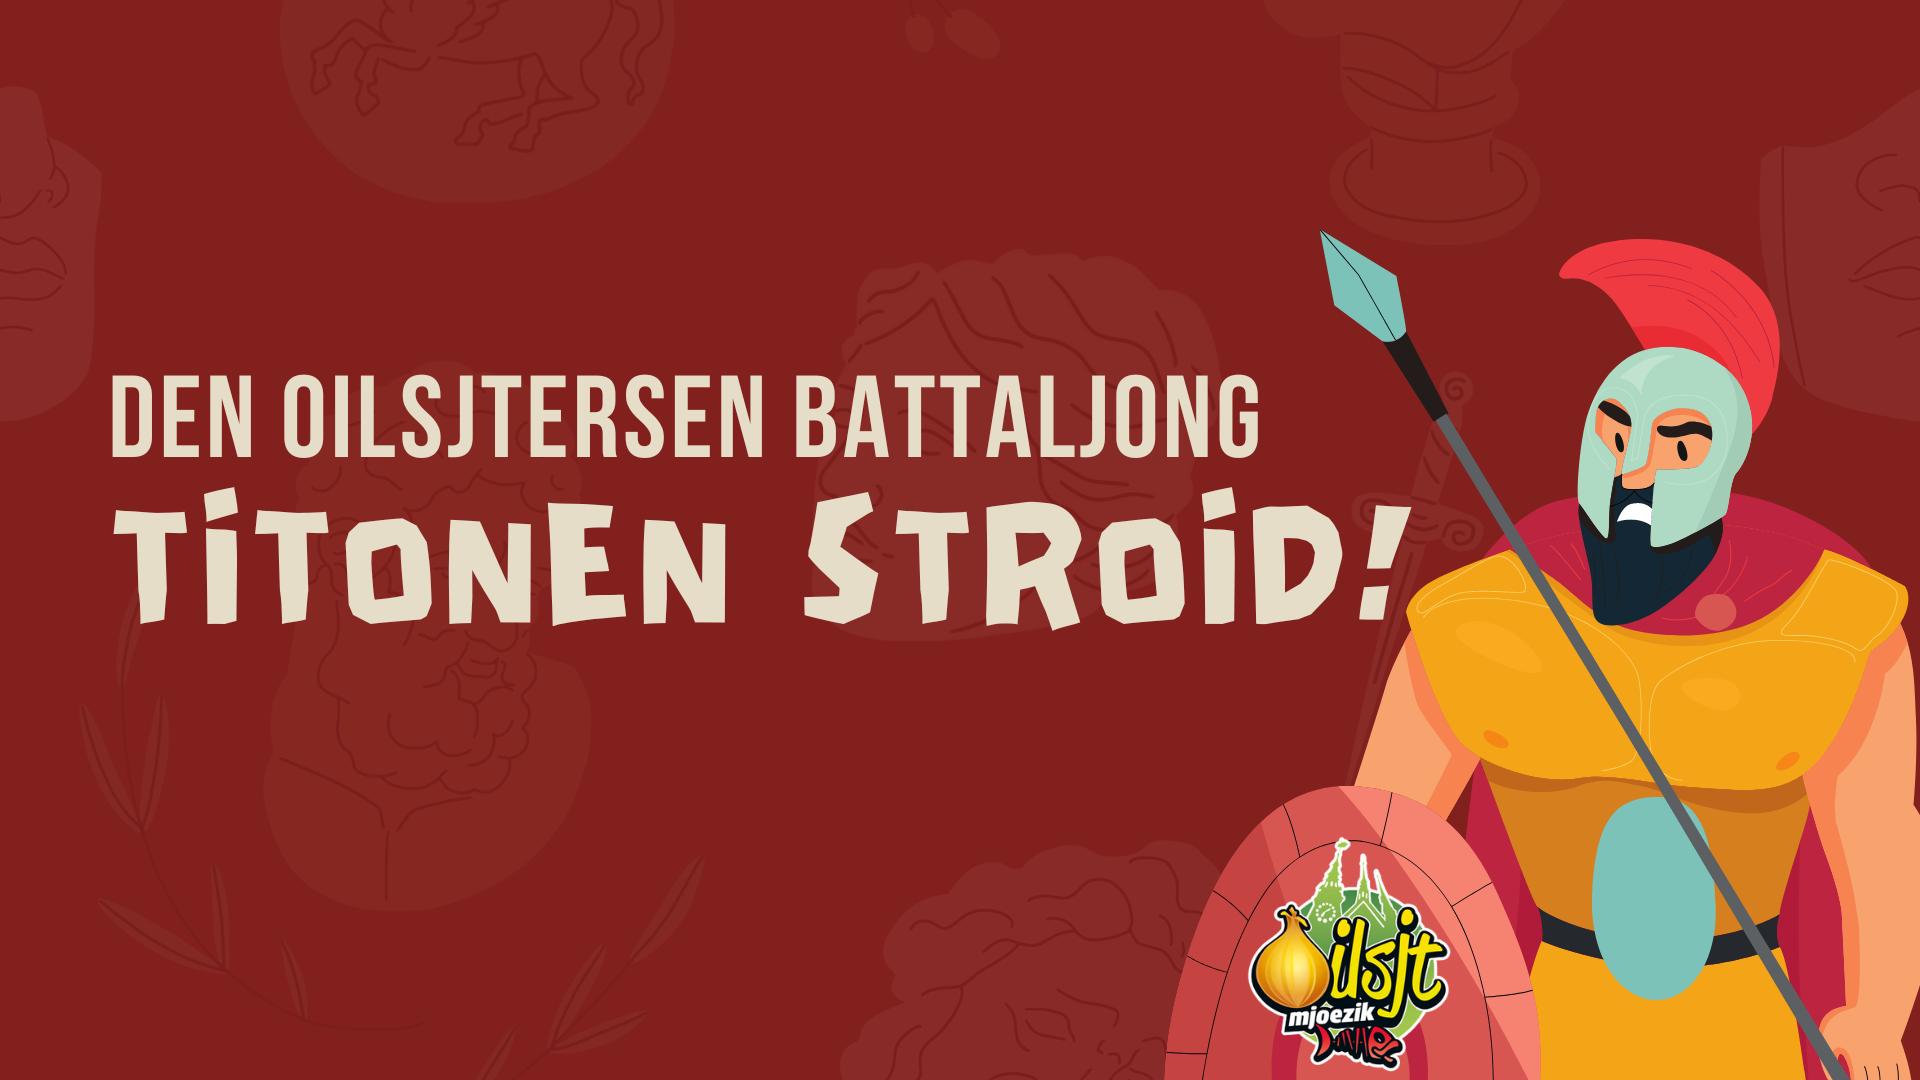 Vroidag, da wiltj zeggen, toid ver Den Oilsjtersen Battaljong den Titonenstroid!